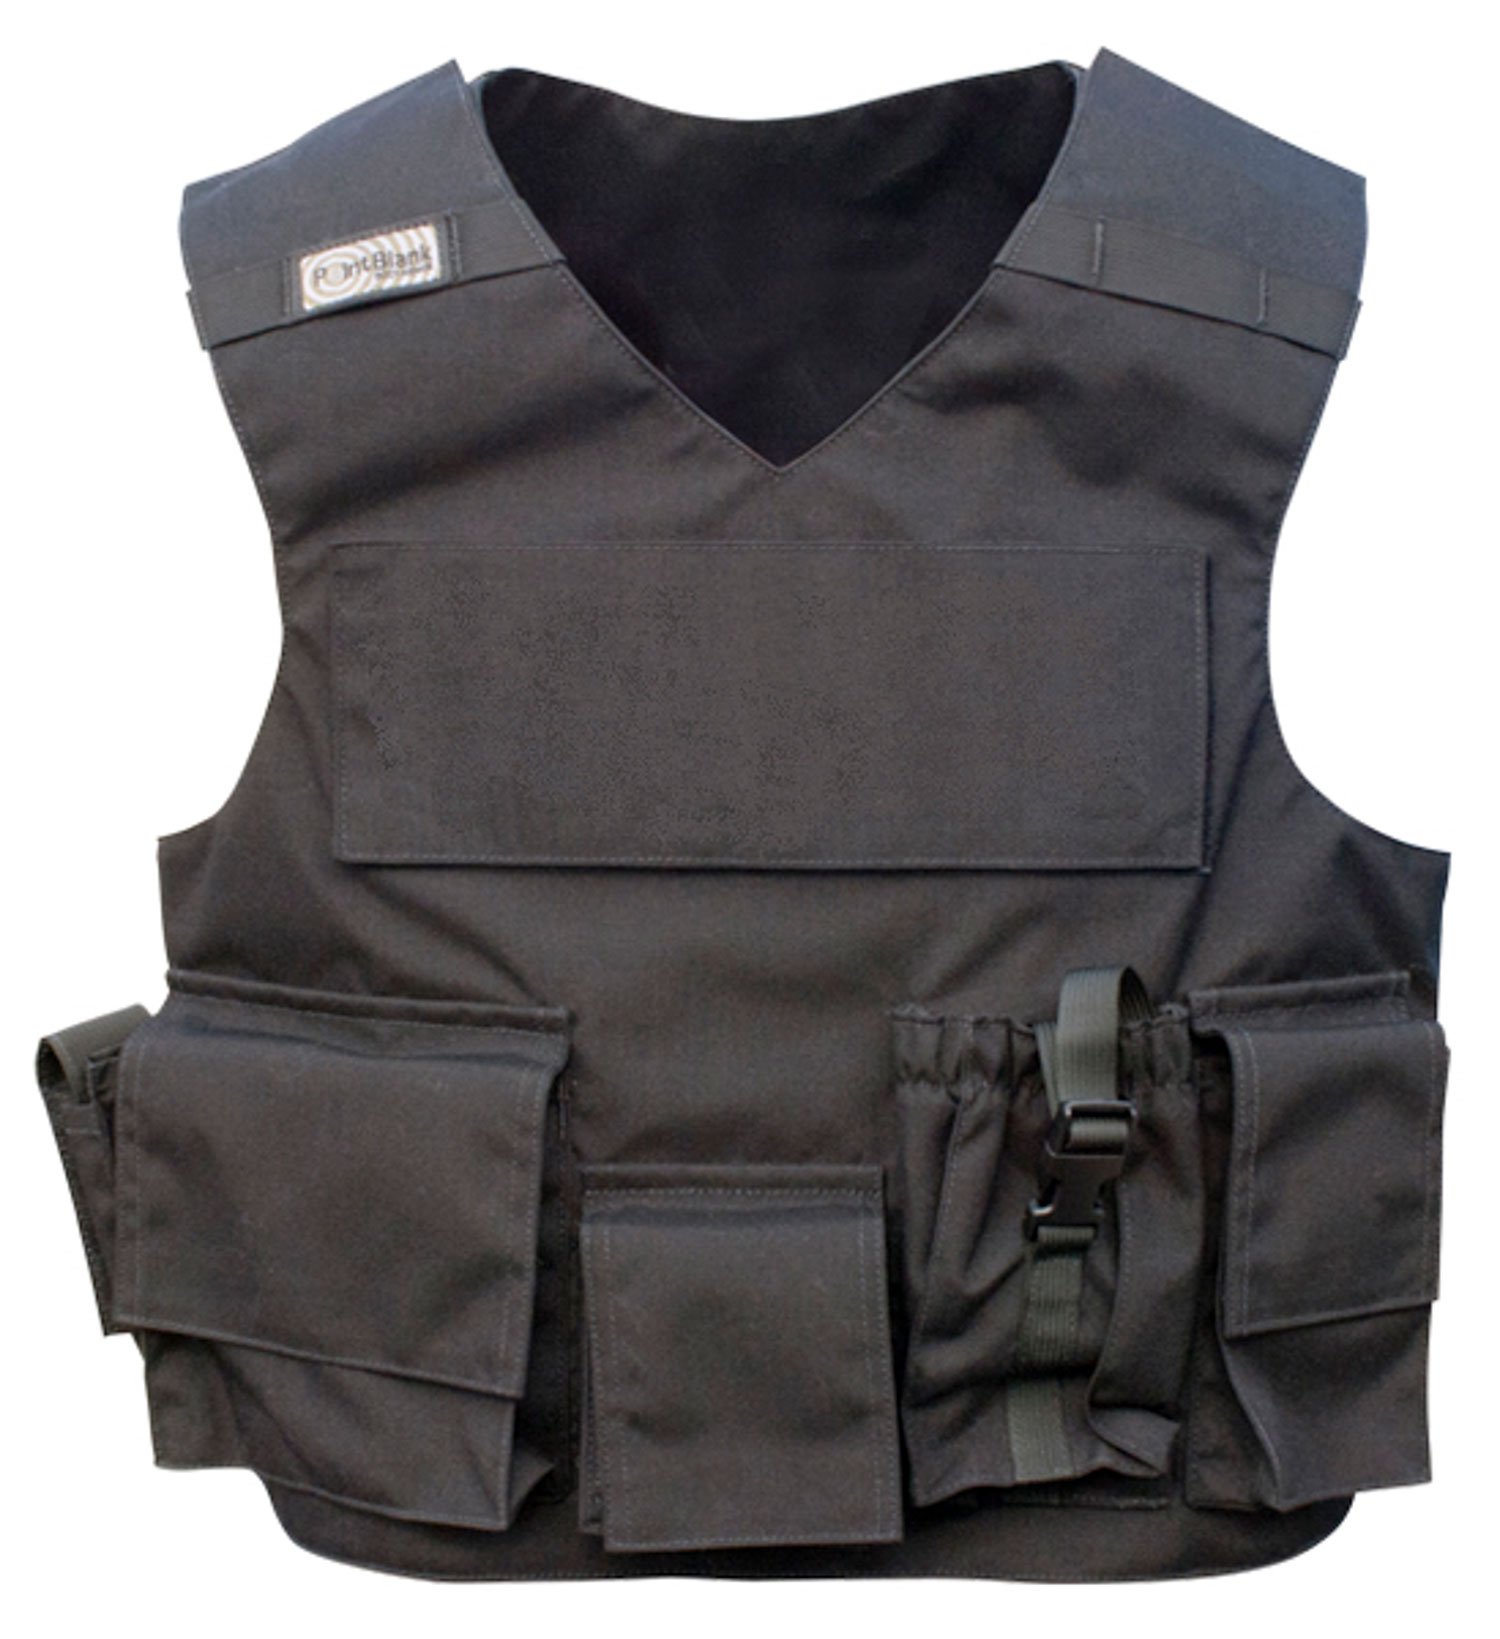 Bulletproof vest. Bulletproof Vest бронежилет. Бронежилет пуленепробиваемый. Полицейский пуленепробиваемый бронежилет. Бронежилет Supreme.